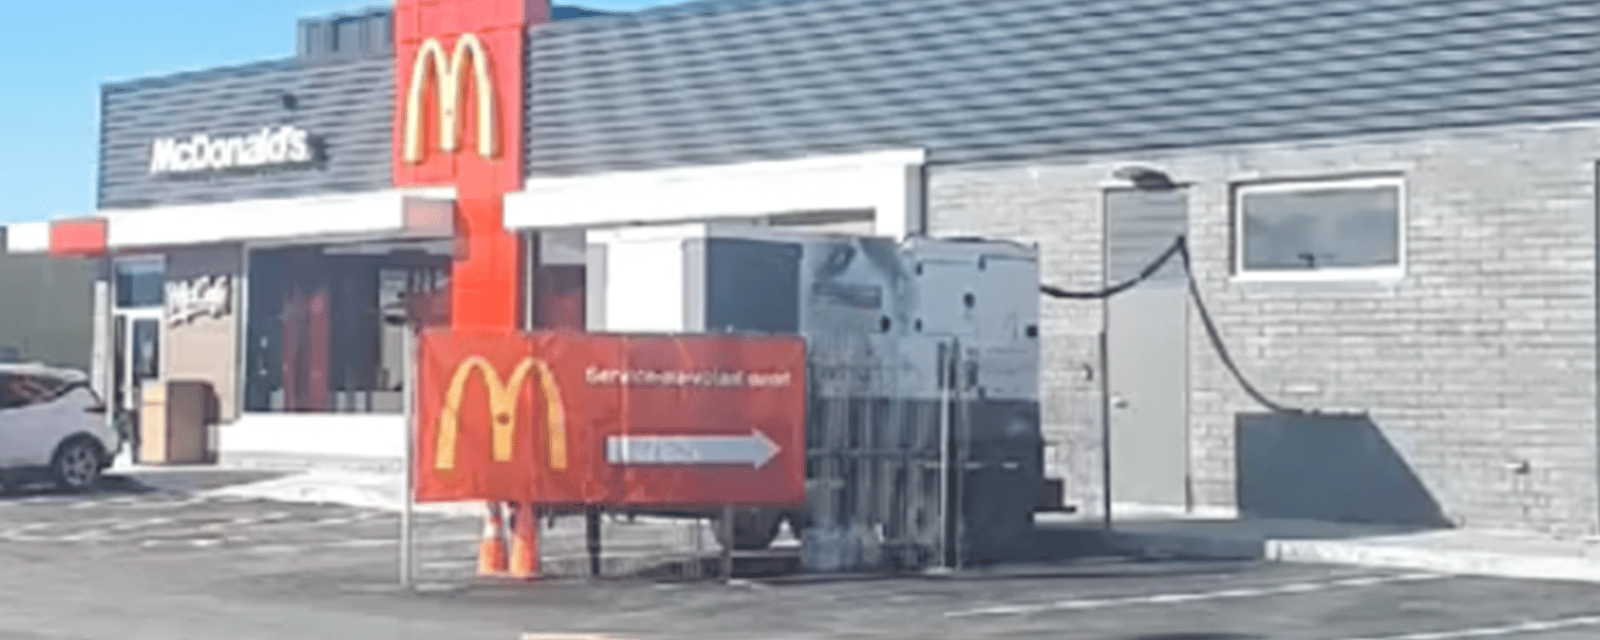 L'emplacement d'un nouveau McDonald's au Québec fait le tour de la planète.